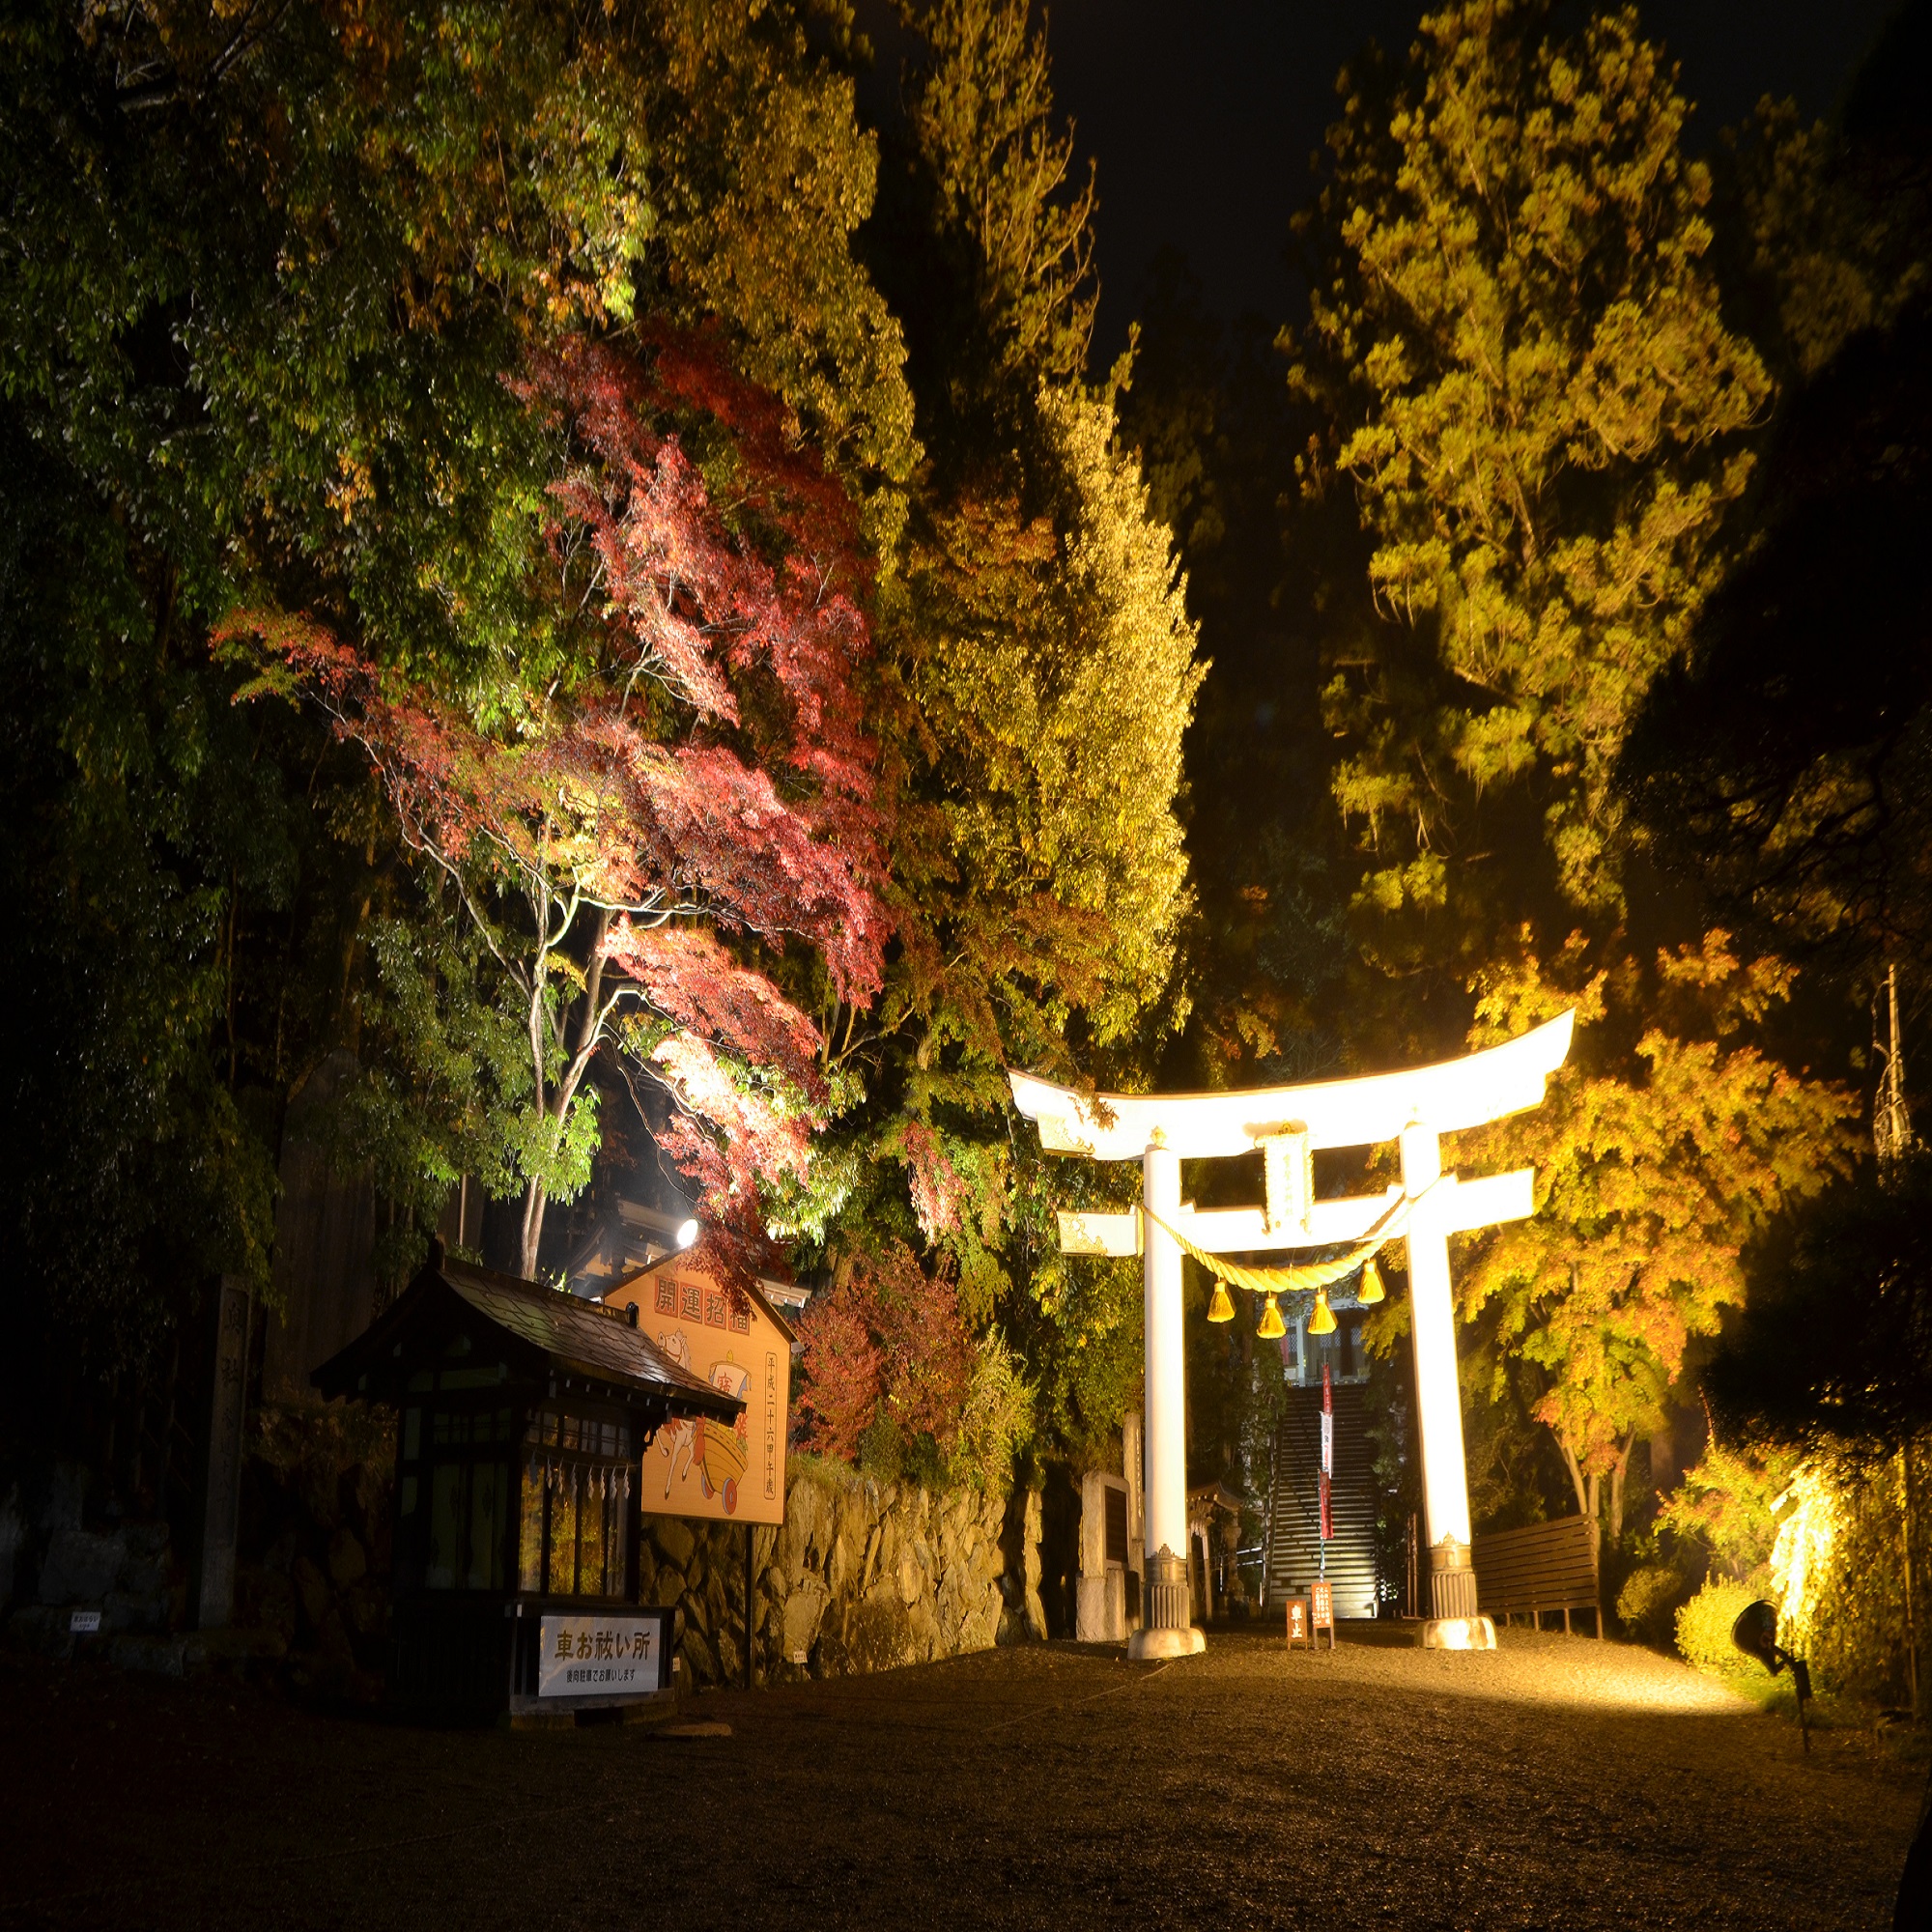 宝登山神社